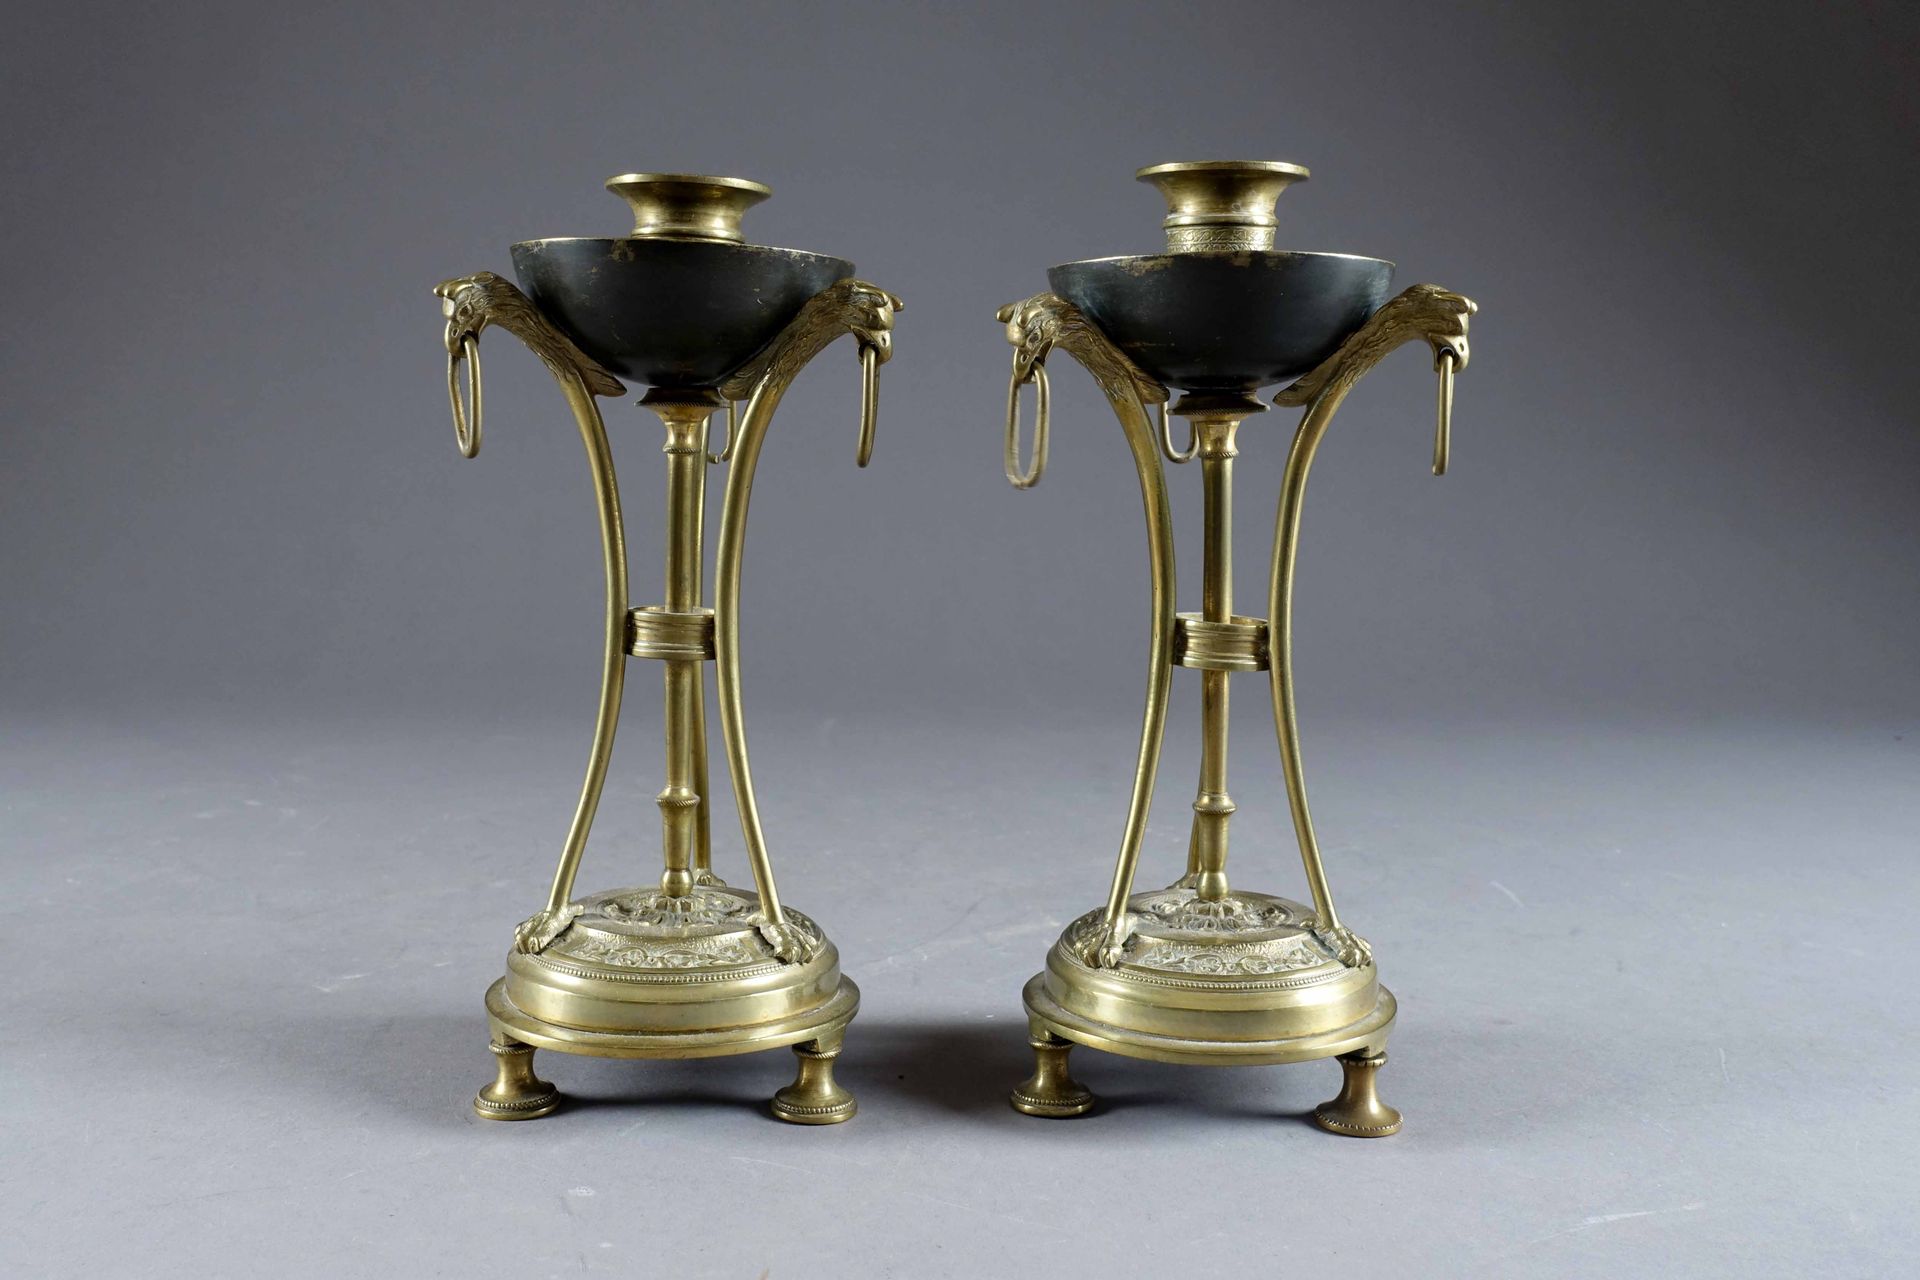 Paire de bougeoirs de style Empire, en athénienne. 一个由三头狮鹫各自携带的酒壶。青铜器。19世纪的法国作品。&hellip;